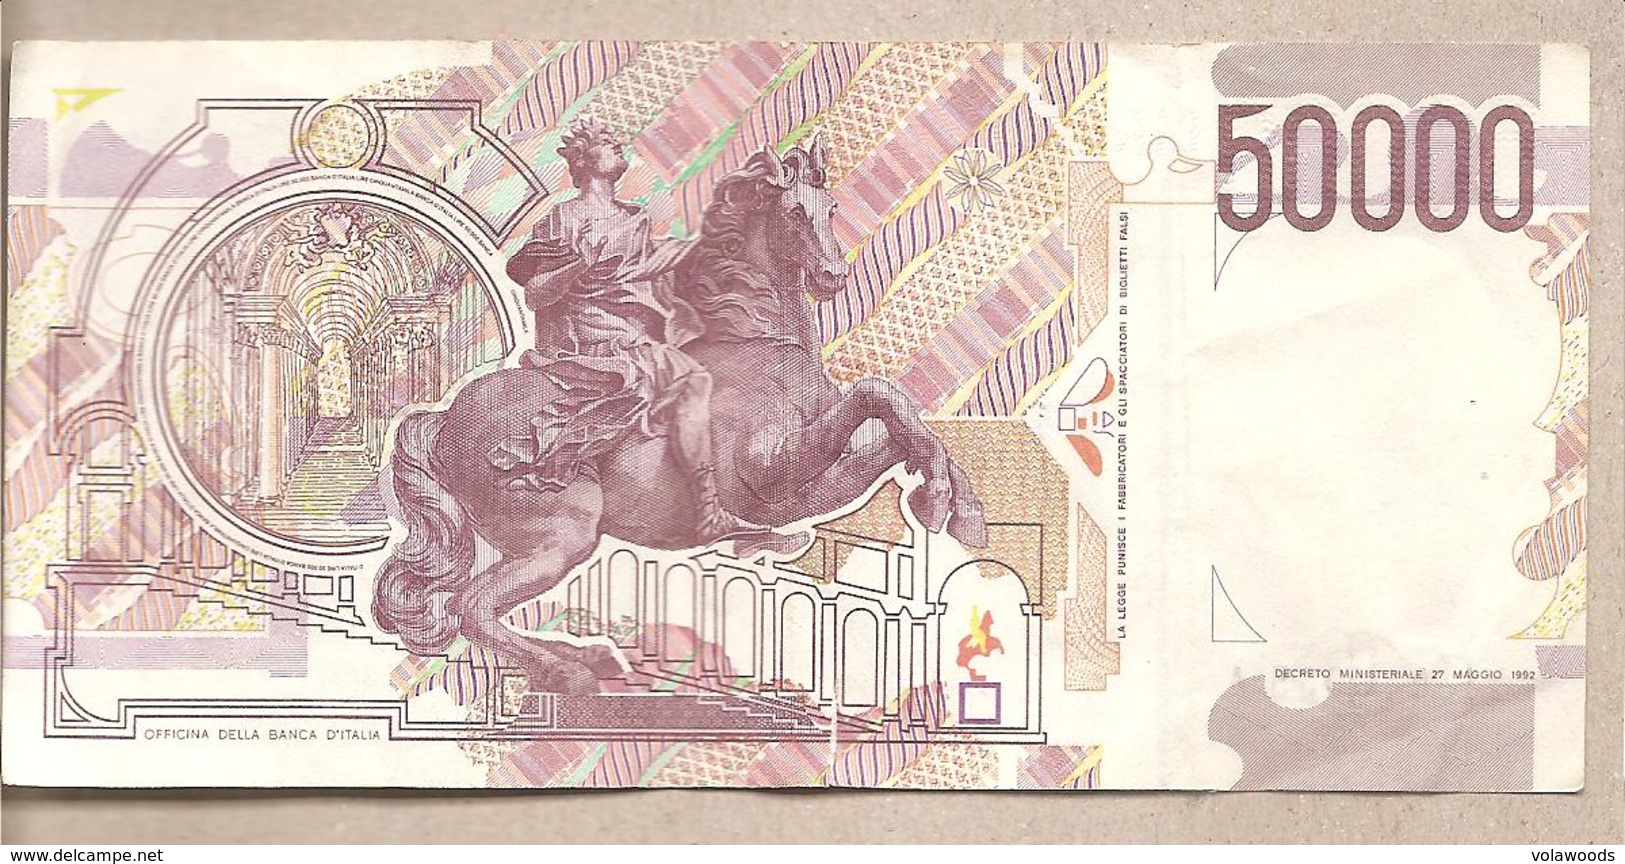 Italia - Banconota Circolata Da 50.000 Lire "Bernini II Tipo" P-116c - 1999 - 50.000 Lire